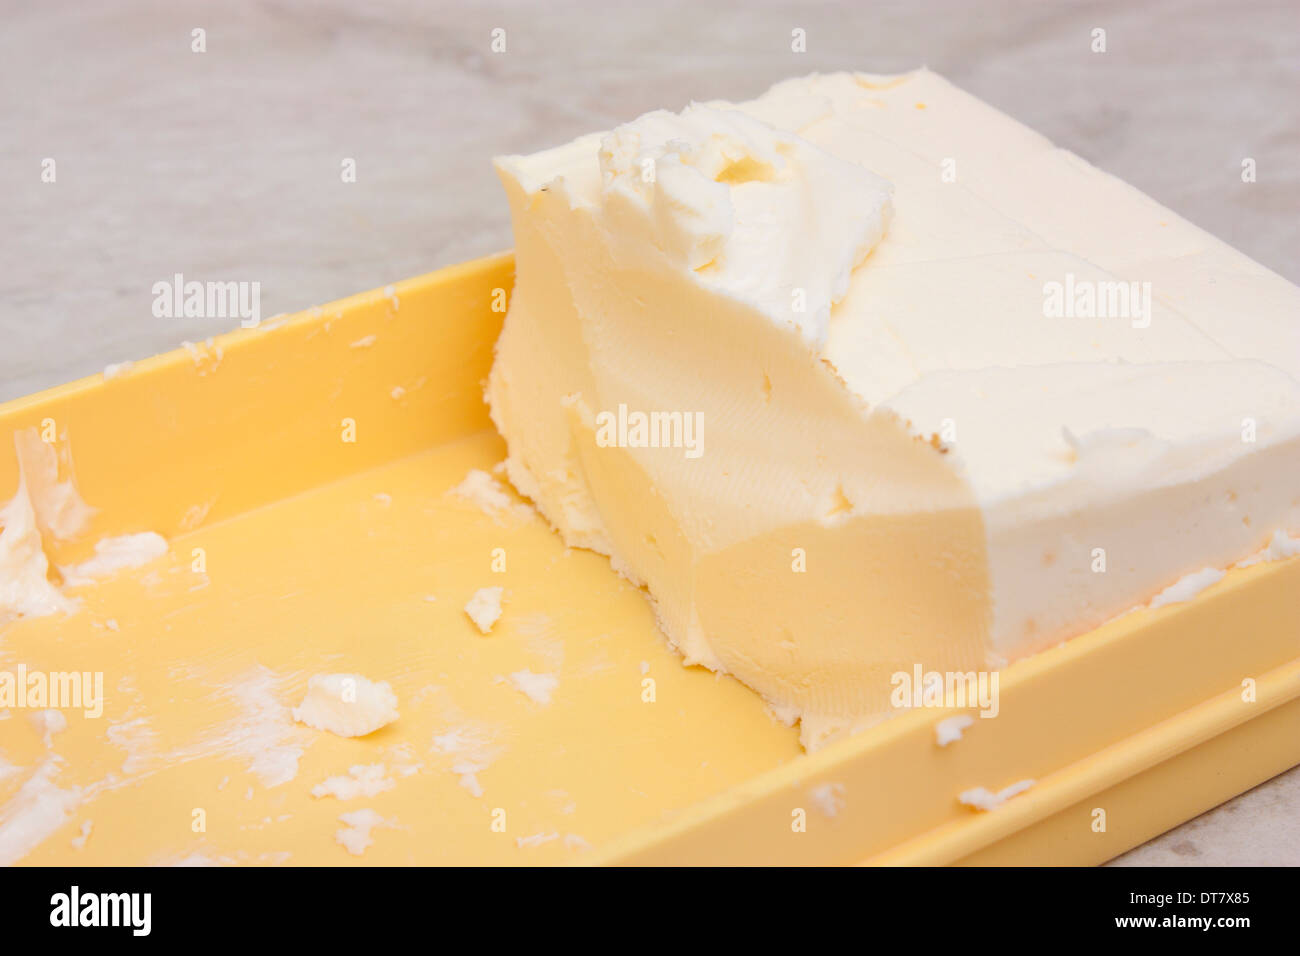 Le soutien du beurre beurre jaune sur la table Banque D'Images